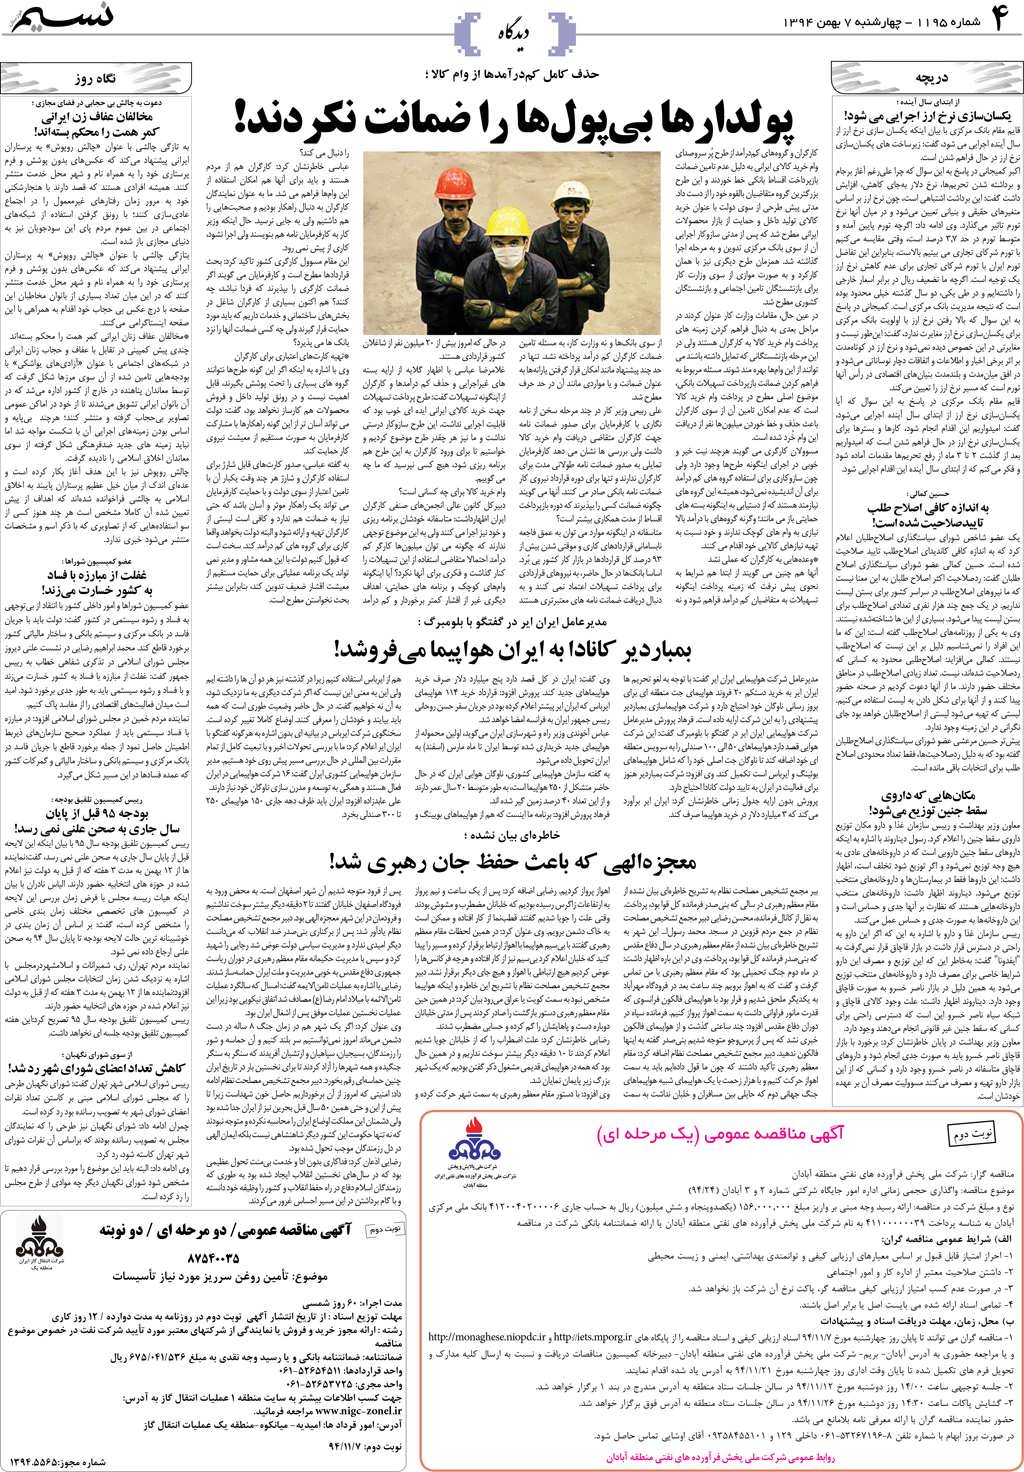 صفحه دیدگاه روزنامه نسیم شماره 1195